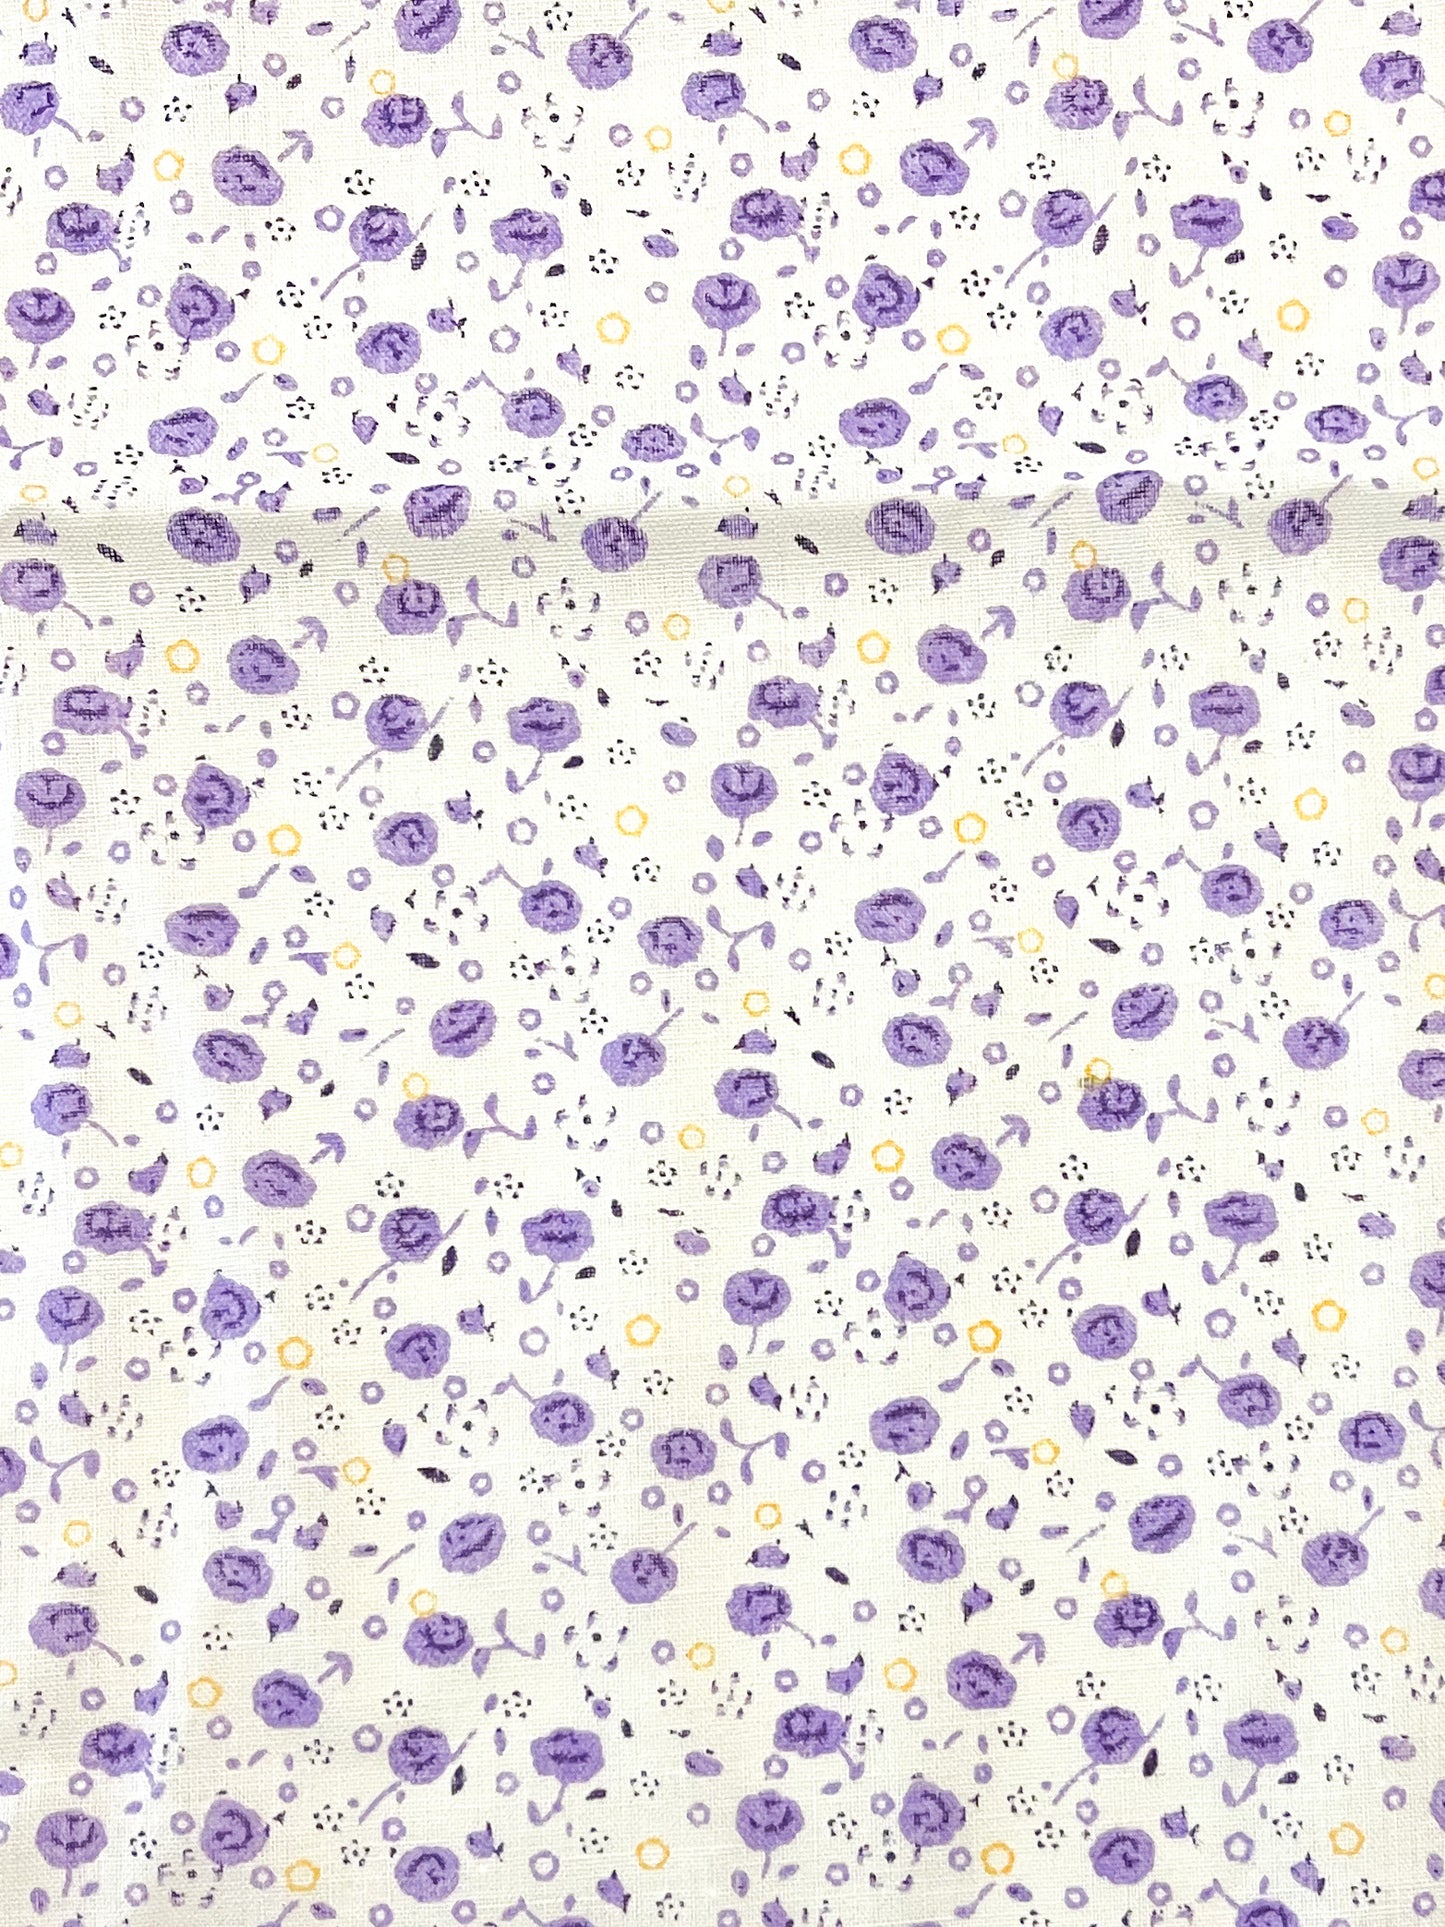 Violet blender precut bundle